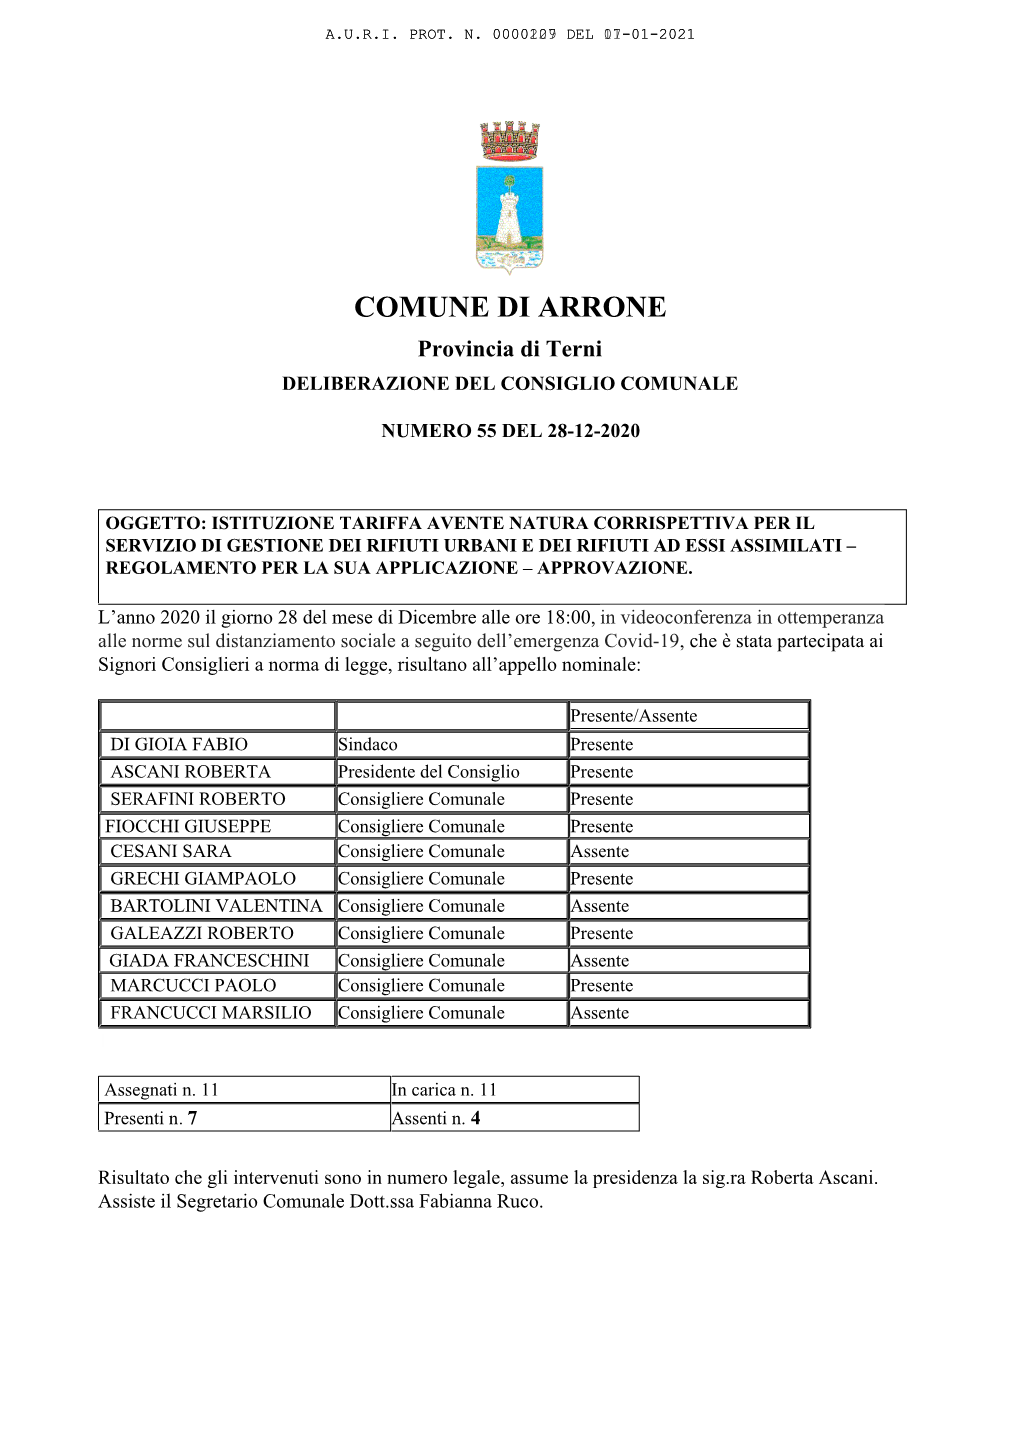 COMUNE DI ARRONE Provincia Di Terni DELIBERAZIONE DEL CONSIGLIO COMUNALE